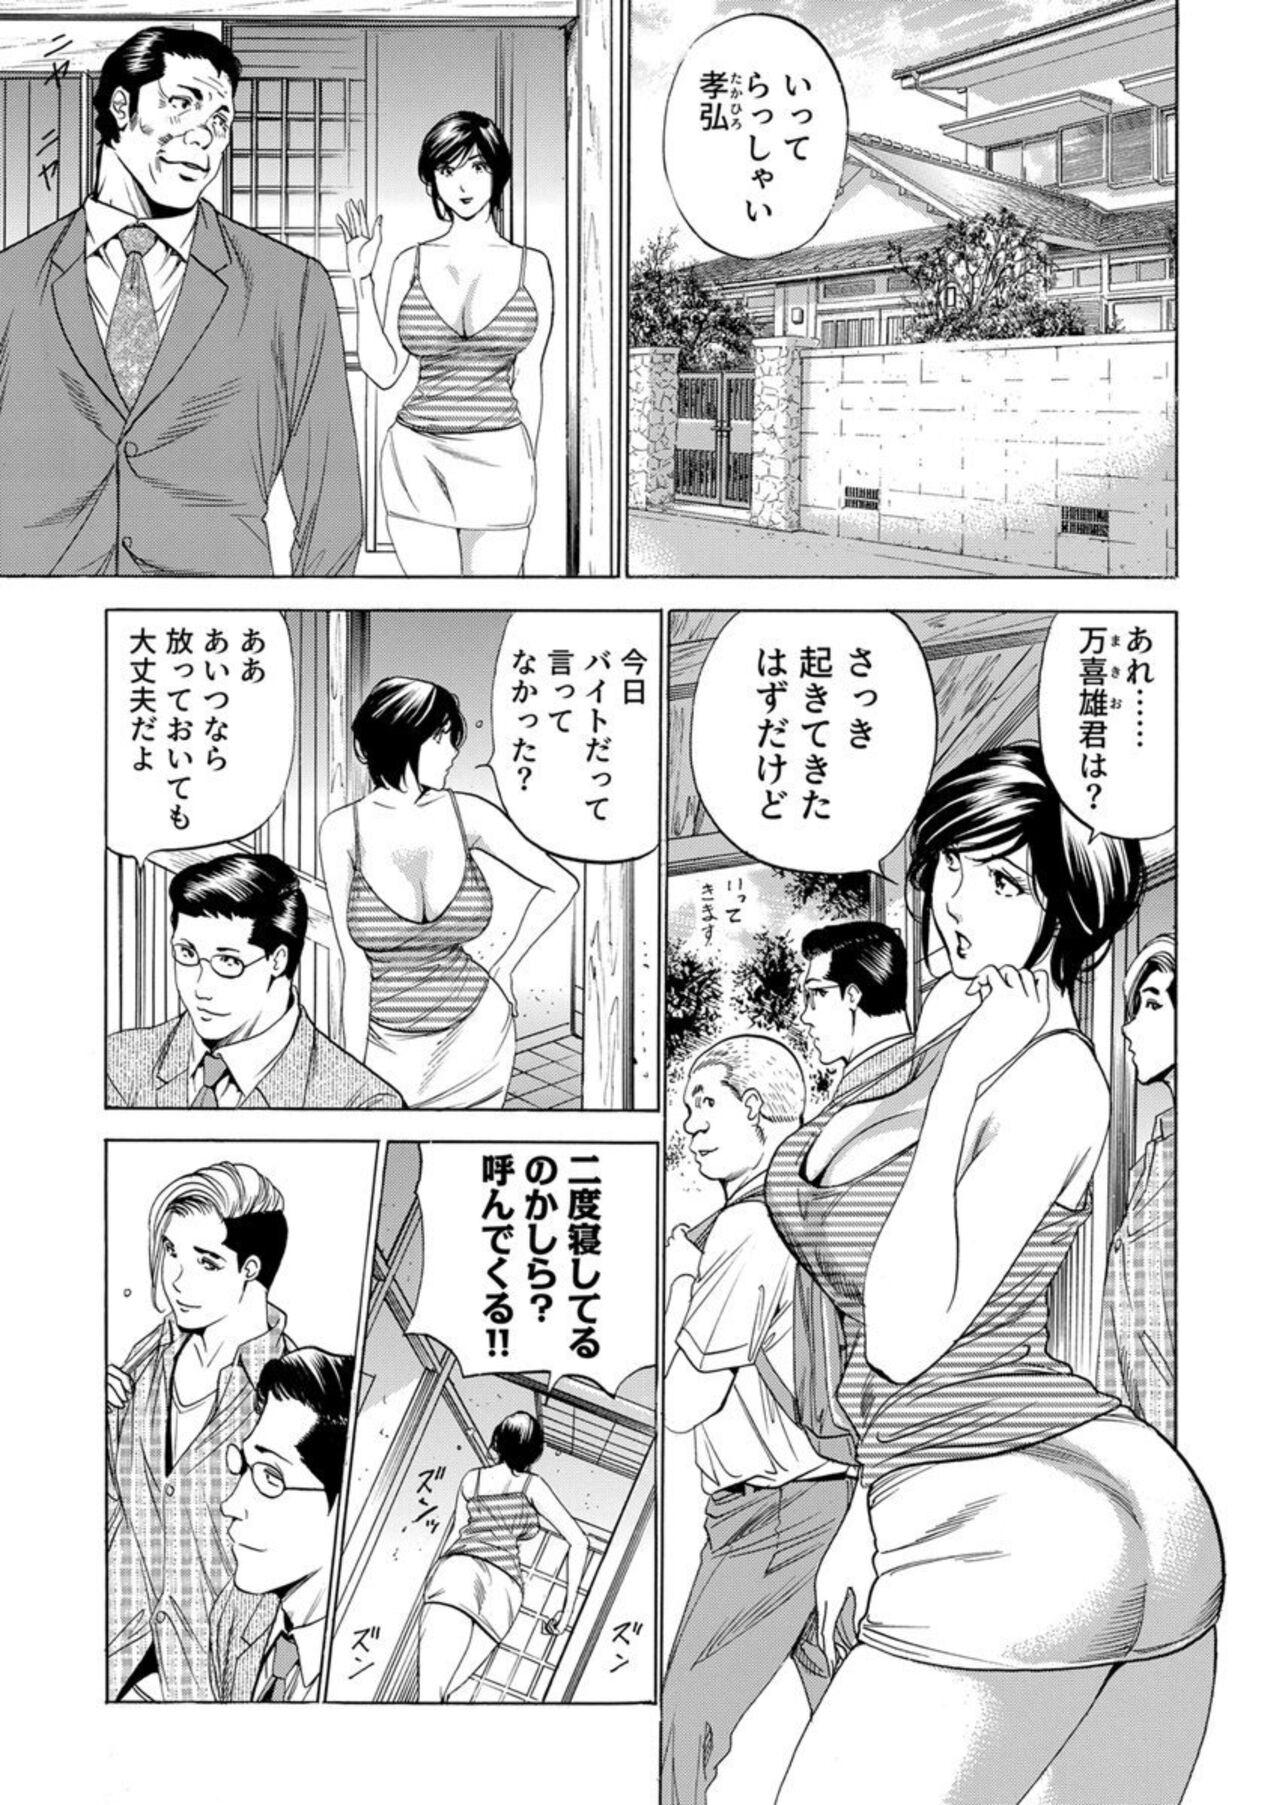 Gostosas Totsugisaki wa Tsureko ga 9 nin!? Gibo, Musukotachi to no sei Kankei ni Nayamu 2 Tongue - Page 3